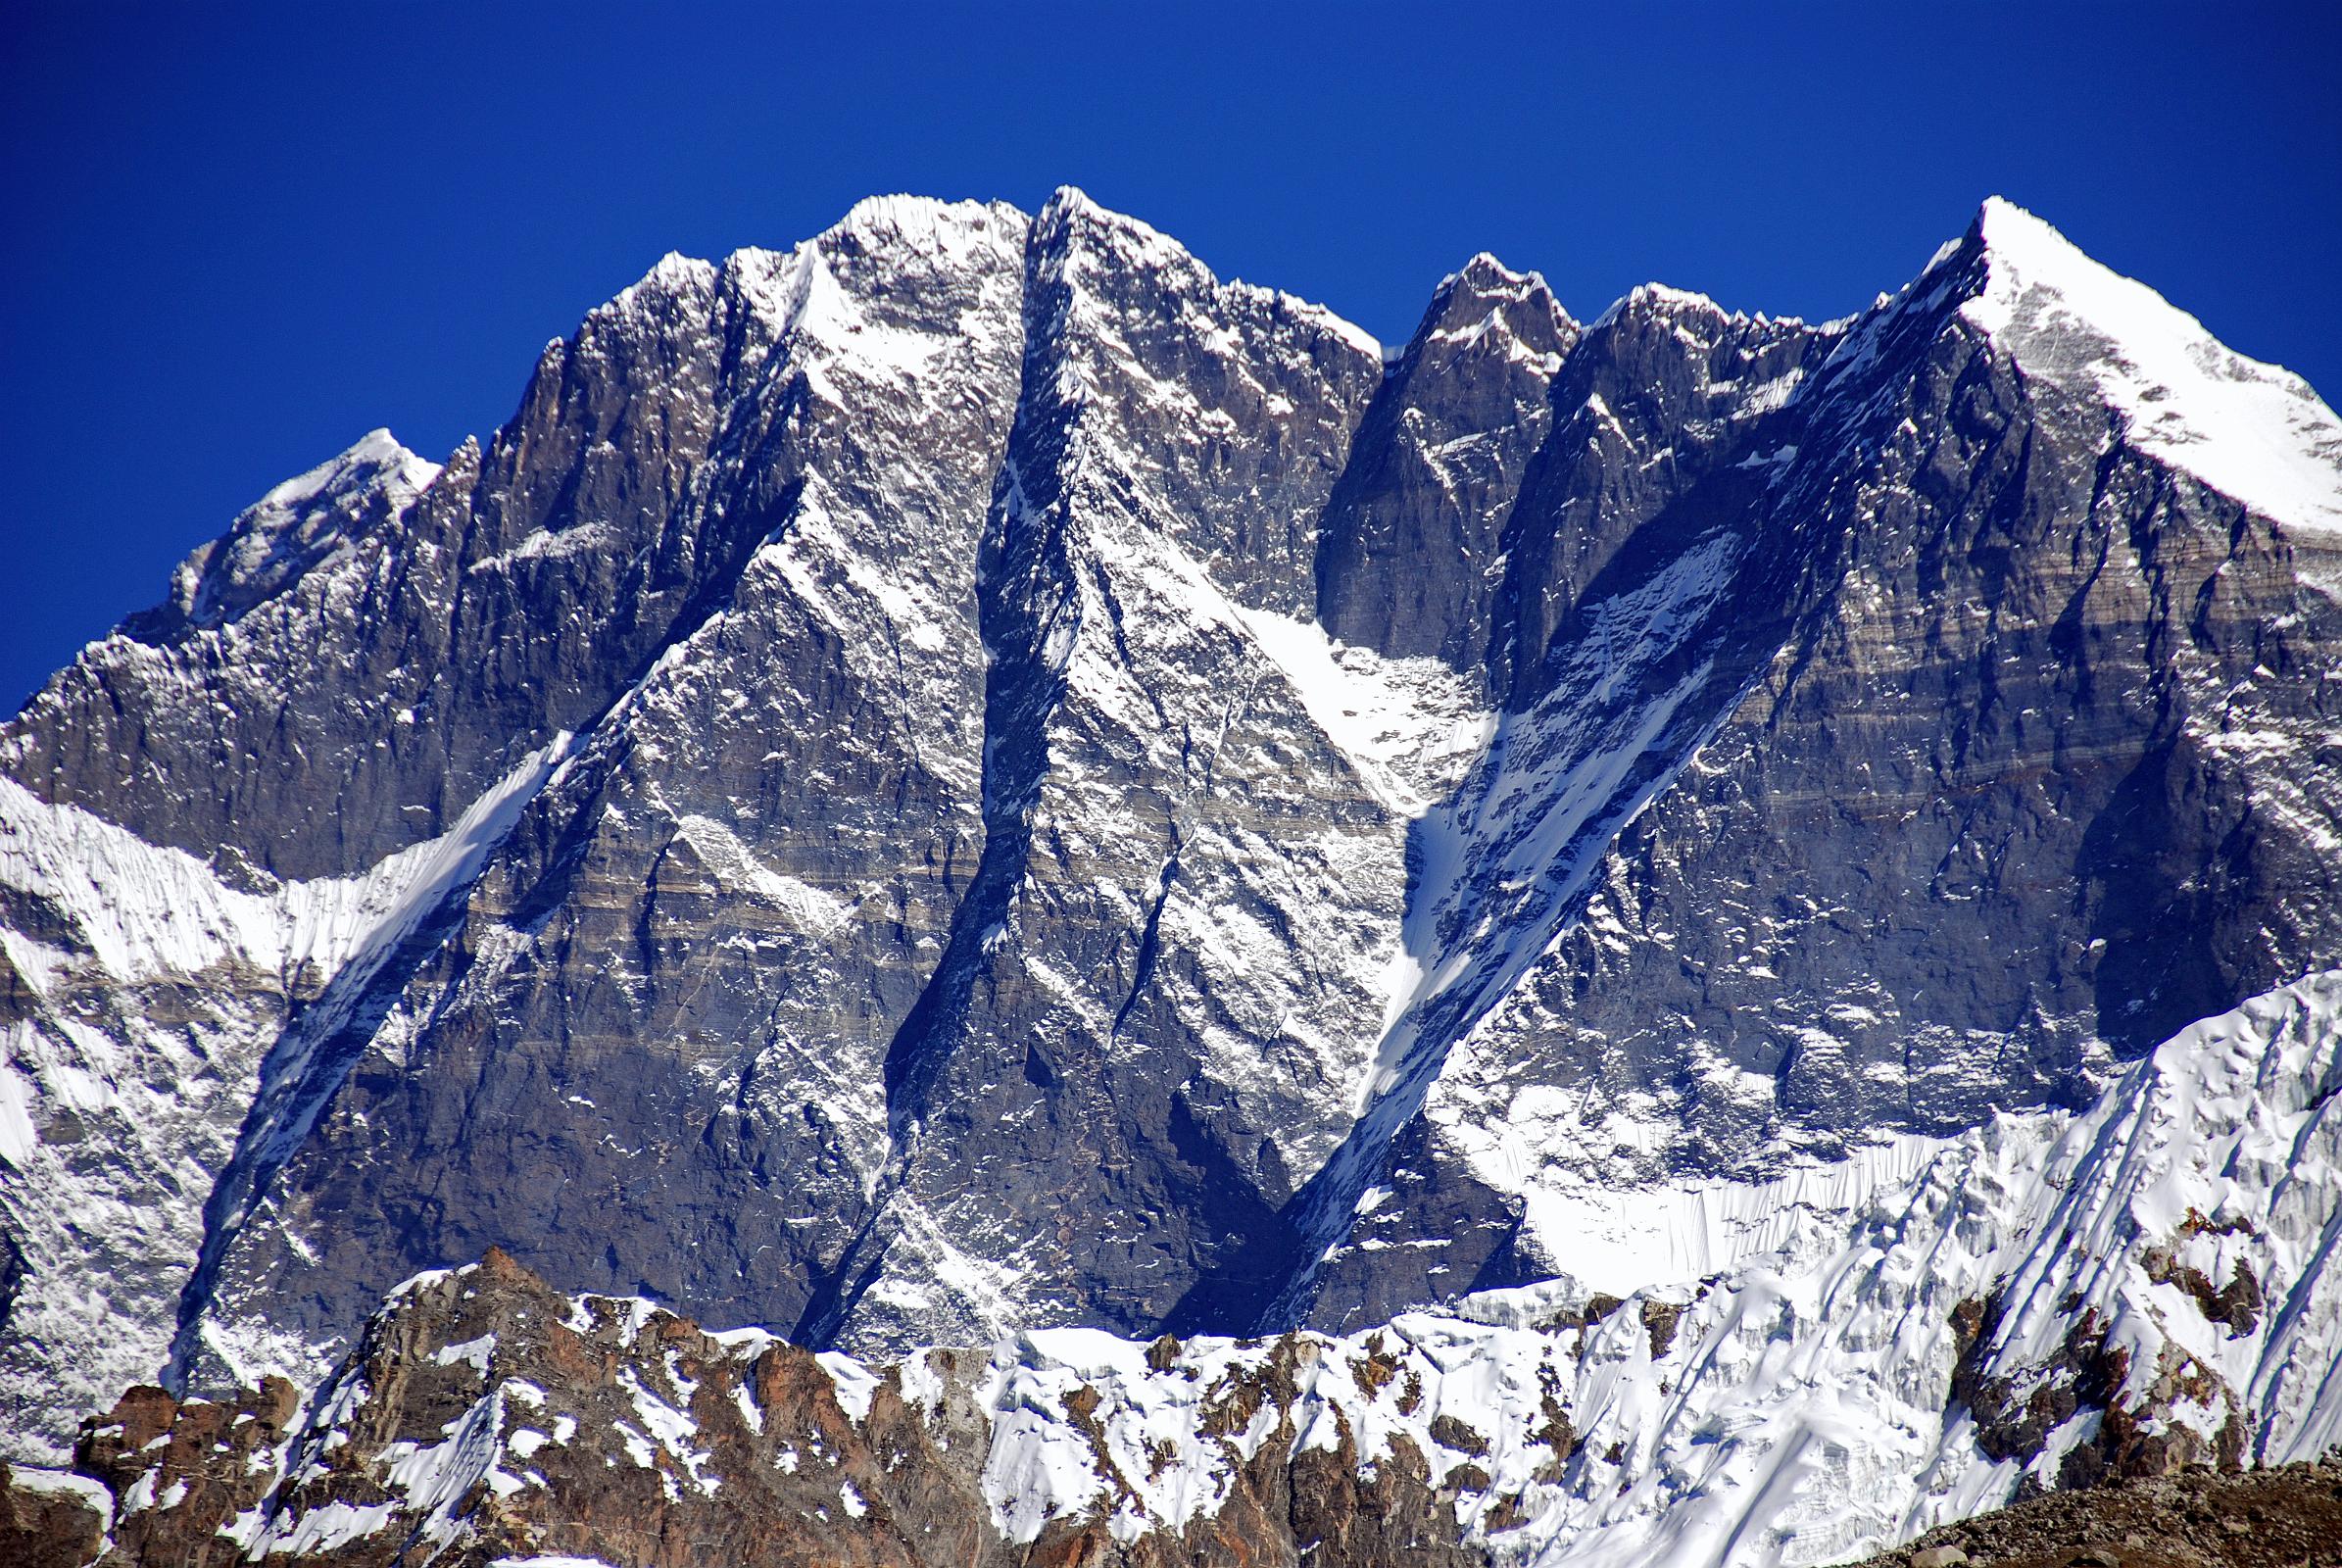 11 04 Everest, Lhotse South Face, Lhotse, Lhotse Middle, Lhotse Shar Close Up From Hongu Valley